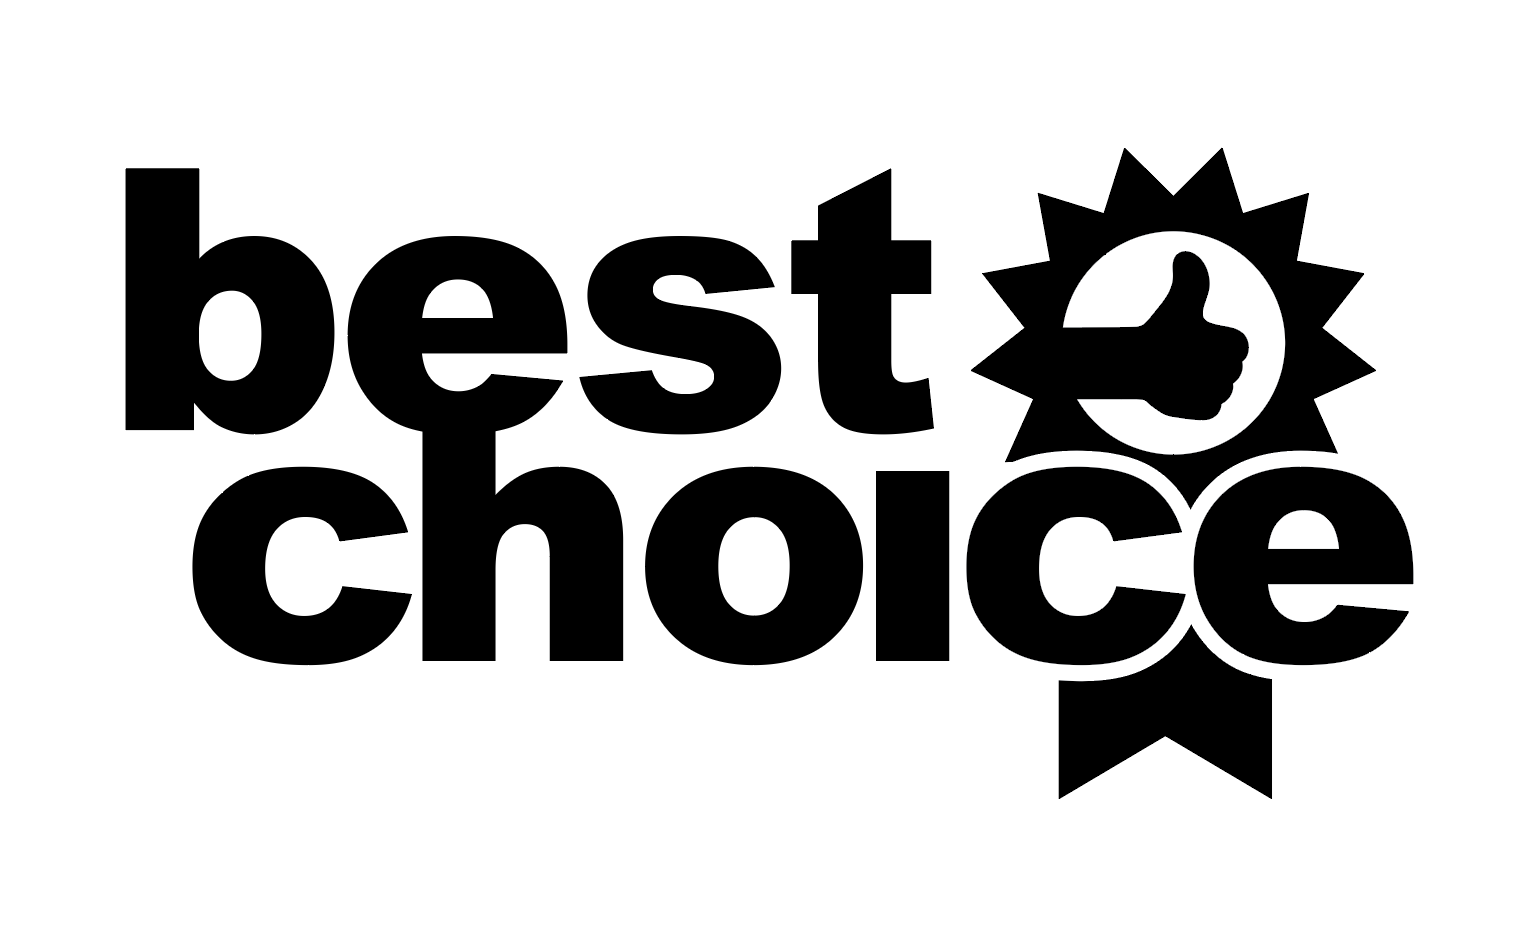 Well choice. The best choice. Choice logo. Best choice logo. Choice надпись.